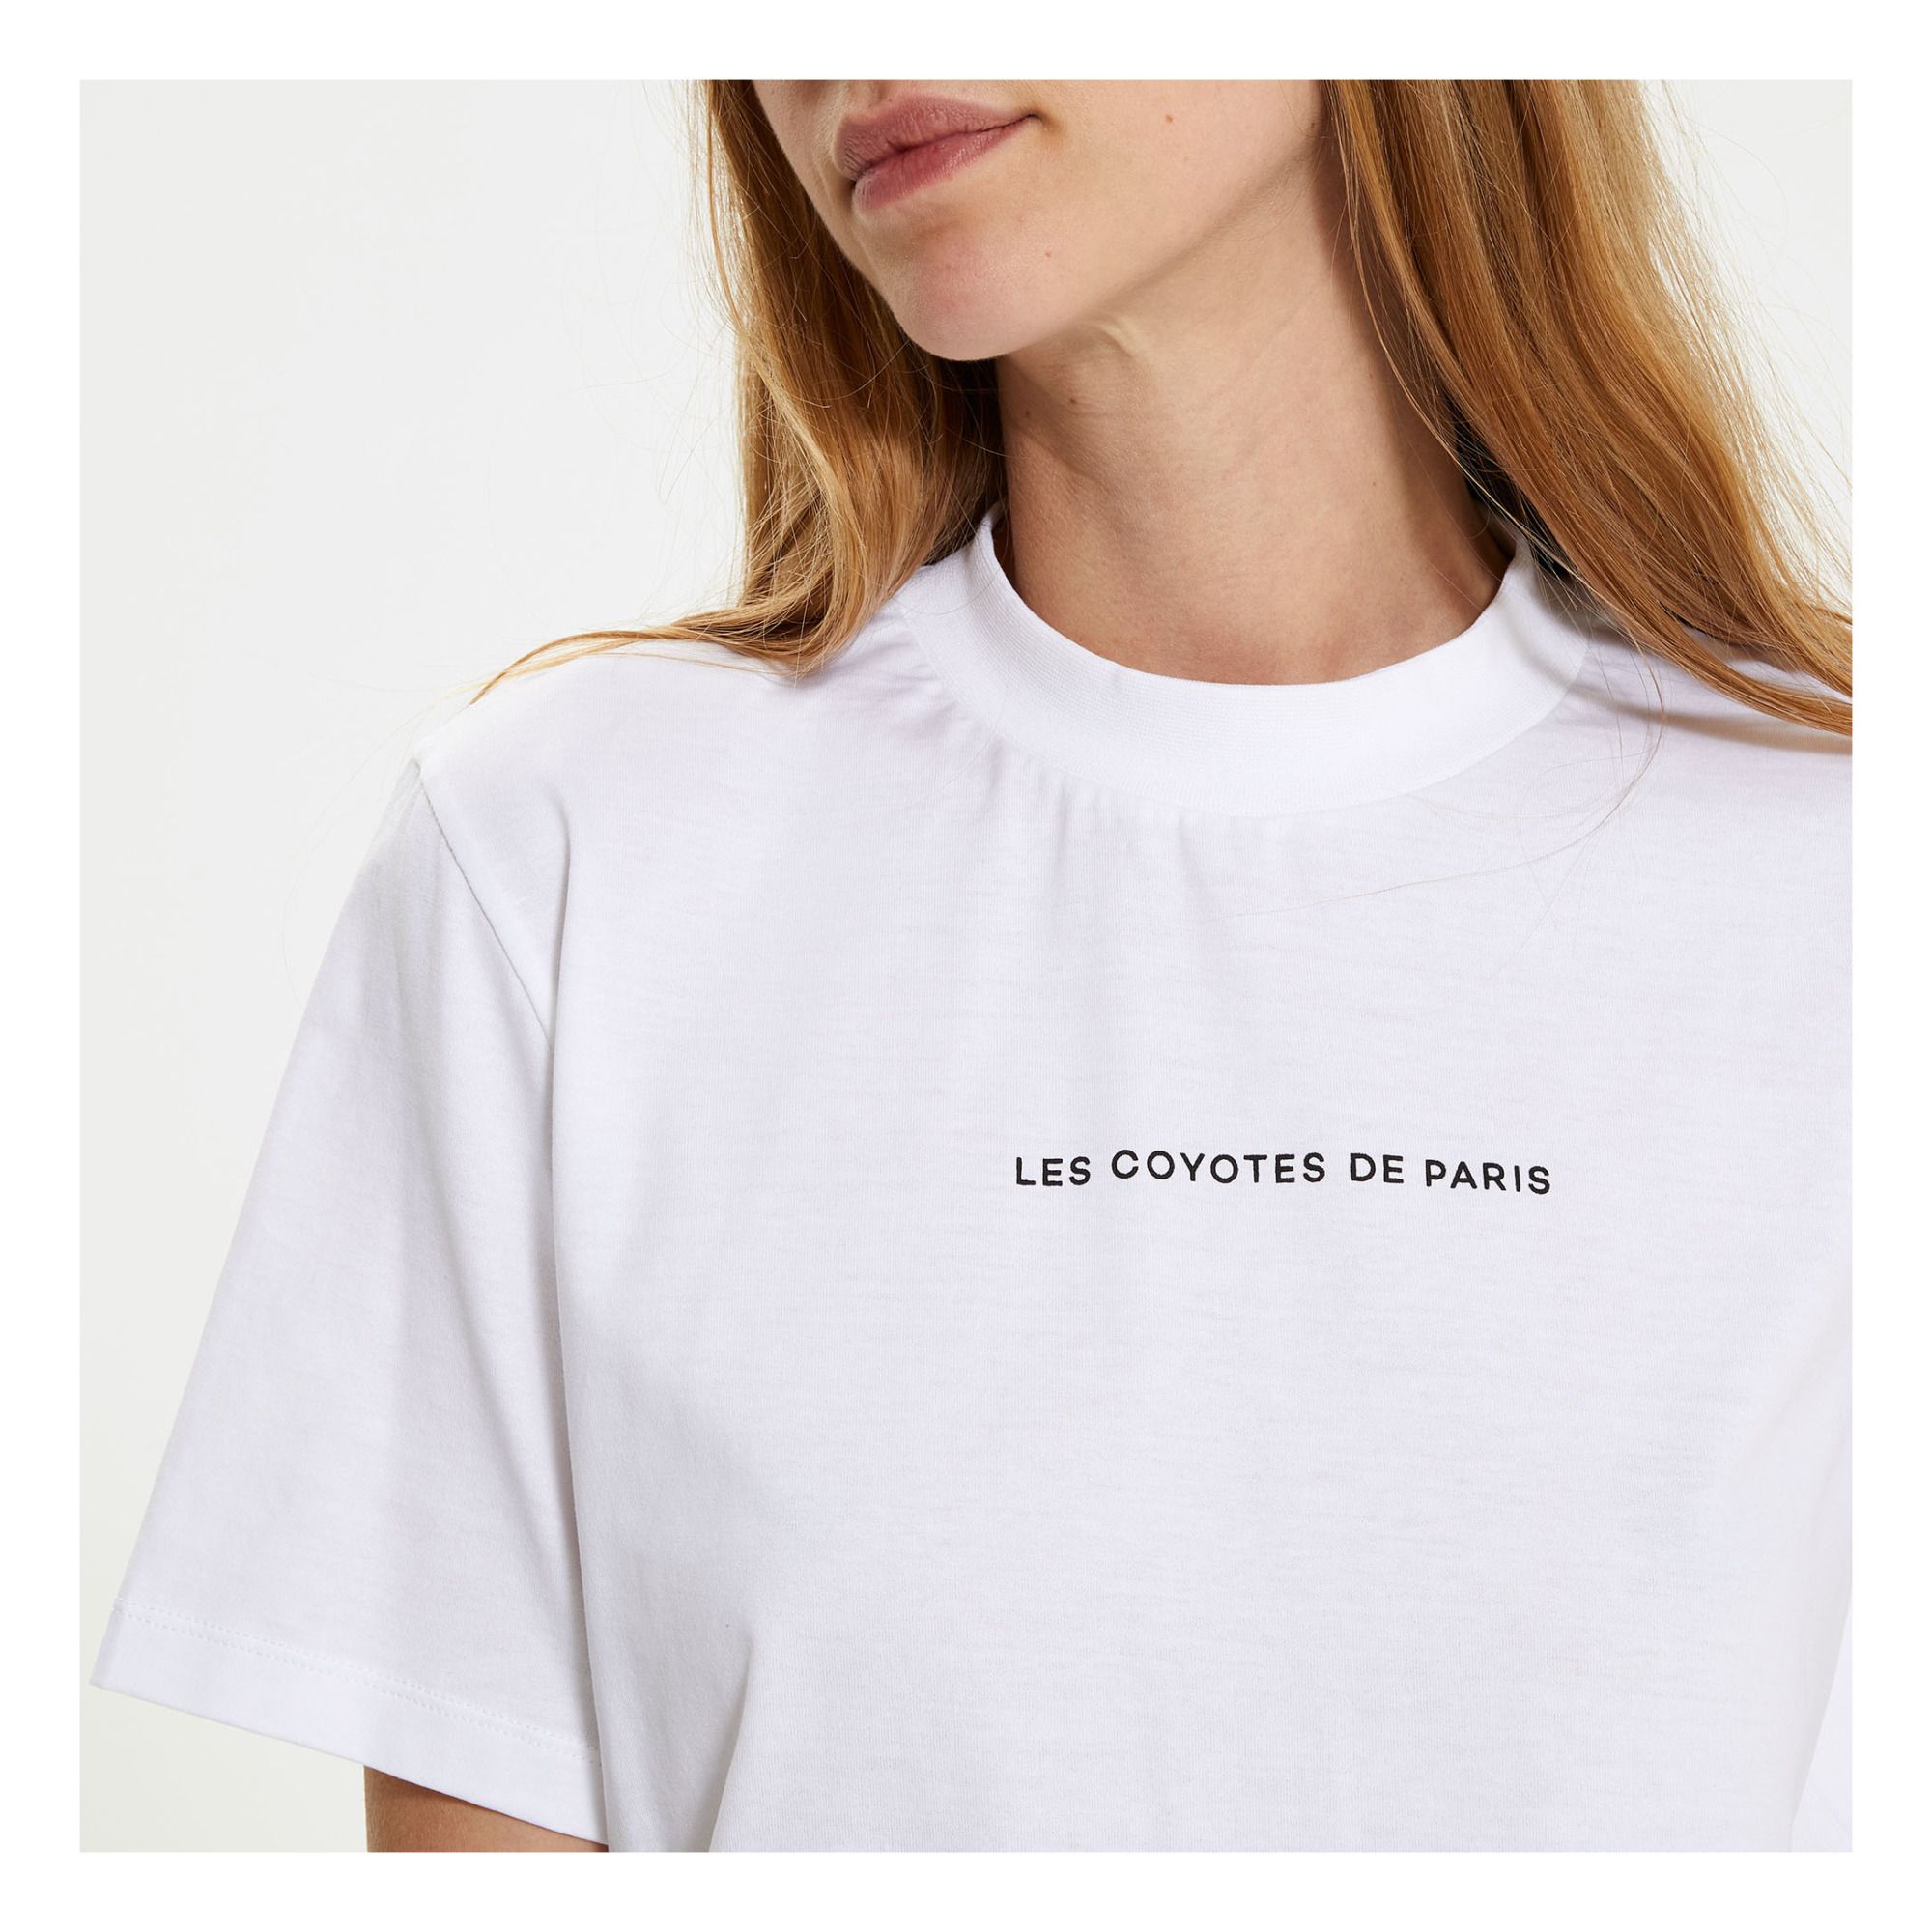 Lia T-shirt White Les Coyotes de Paris Women Fashion Adult